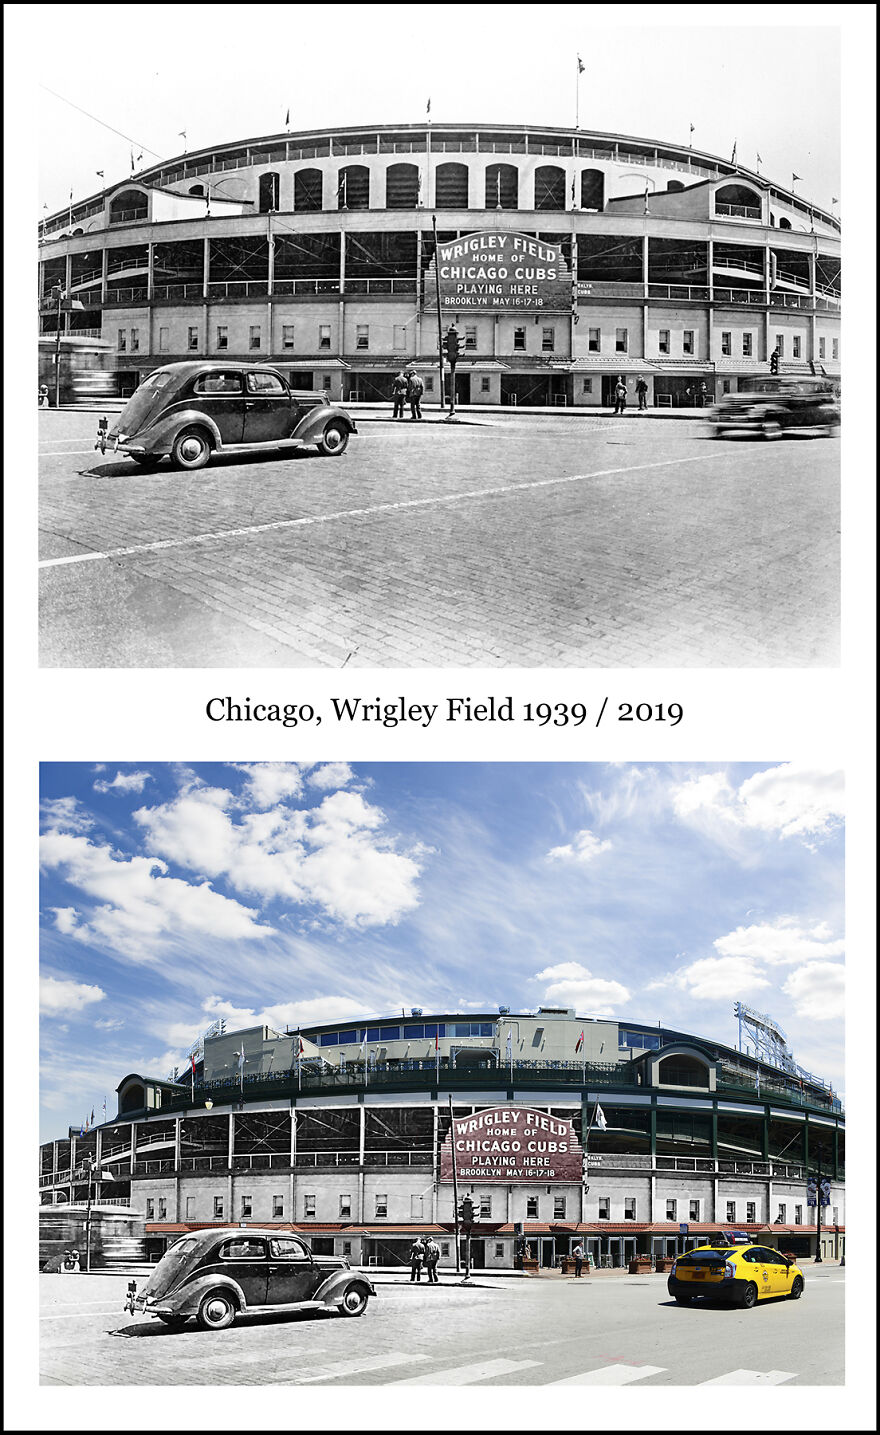 Chicago, Wrigley Field 1939 / 2019